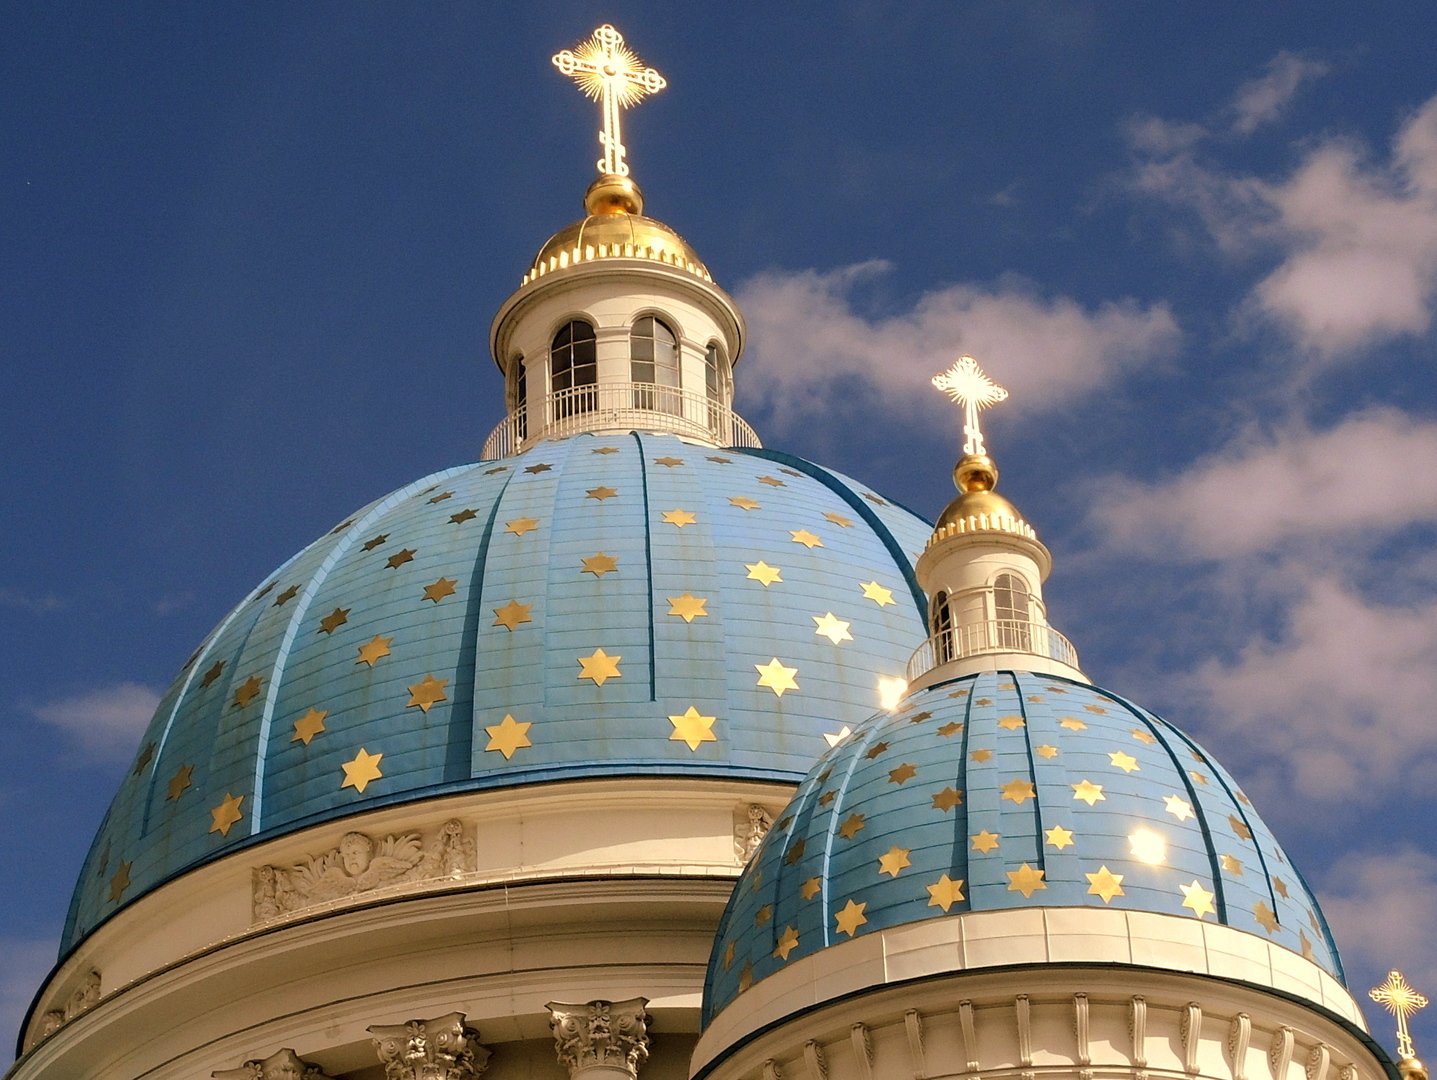 Купола соборов и церквей